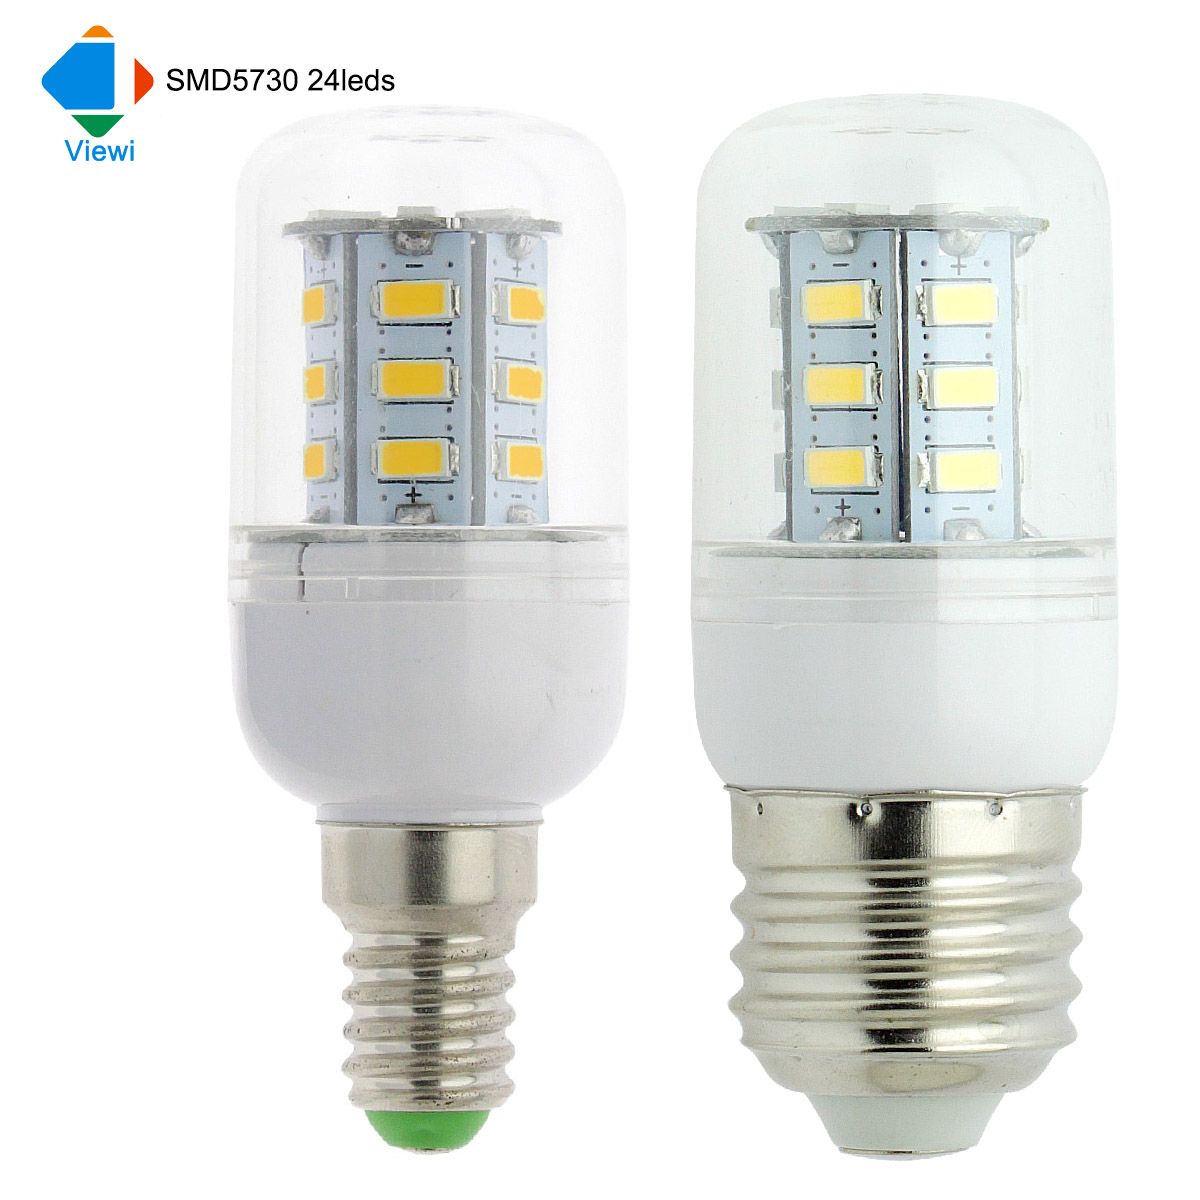 50X Ampoule Led E14 E27 GU10 B22 G9 Corn Bulb Light Smd 5730 24leds 360 Degree Super Lighting